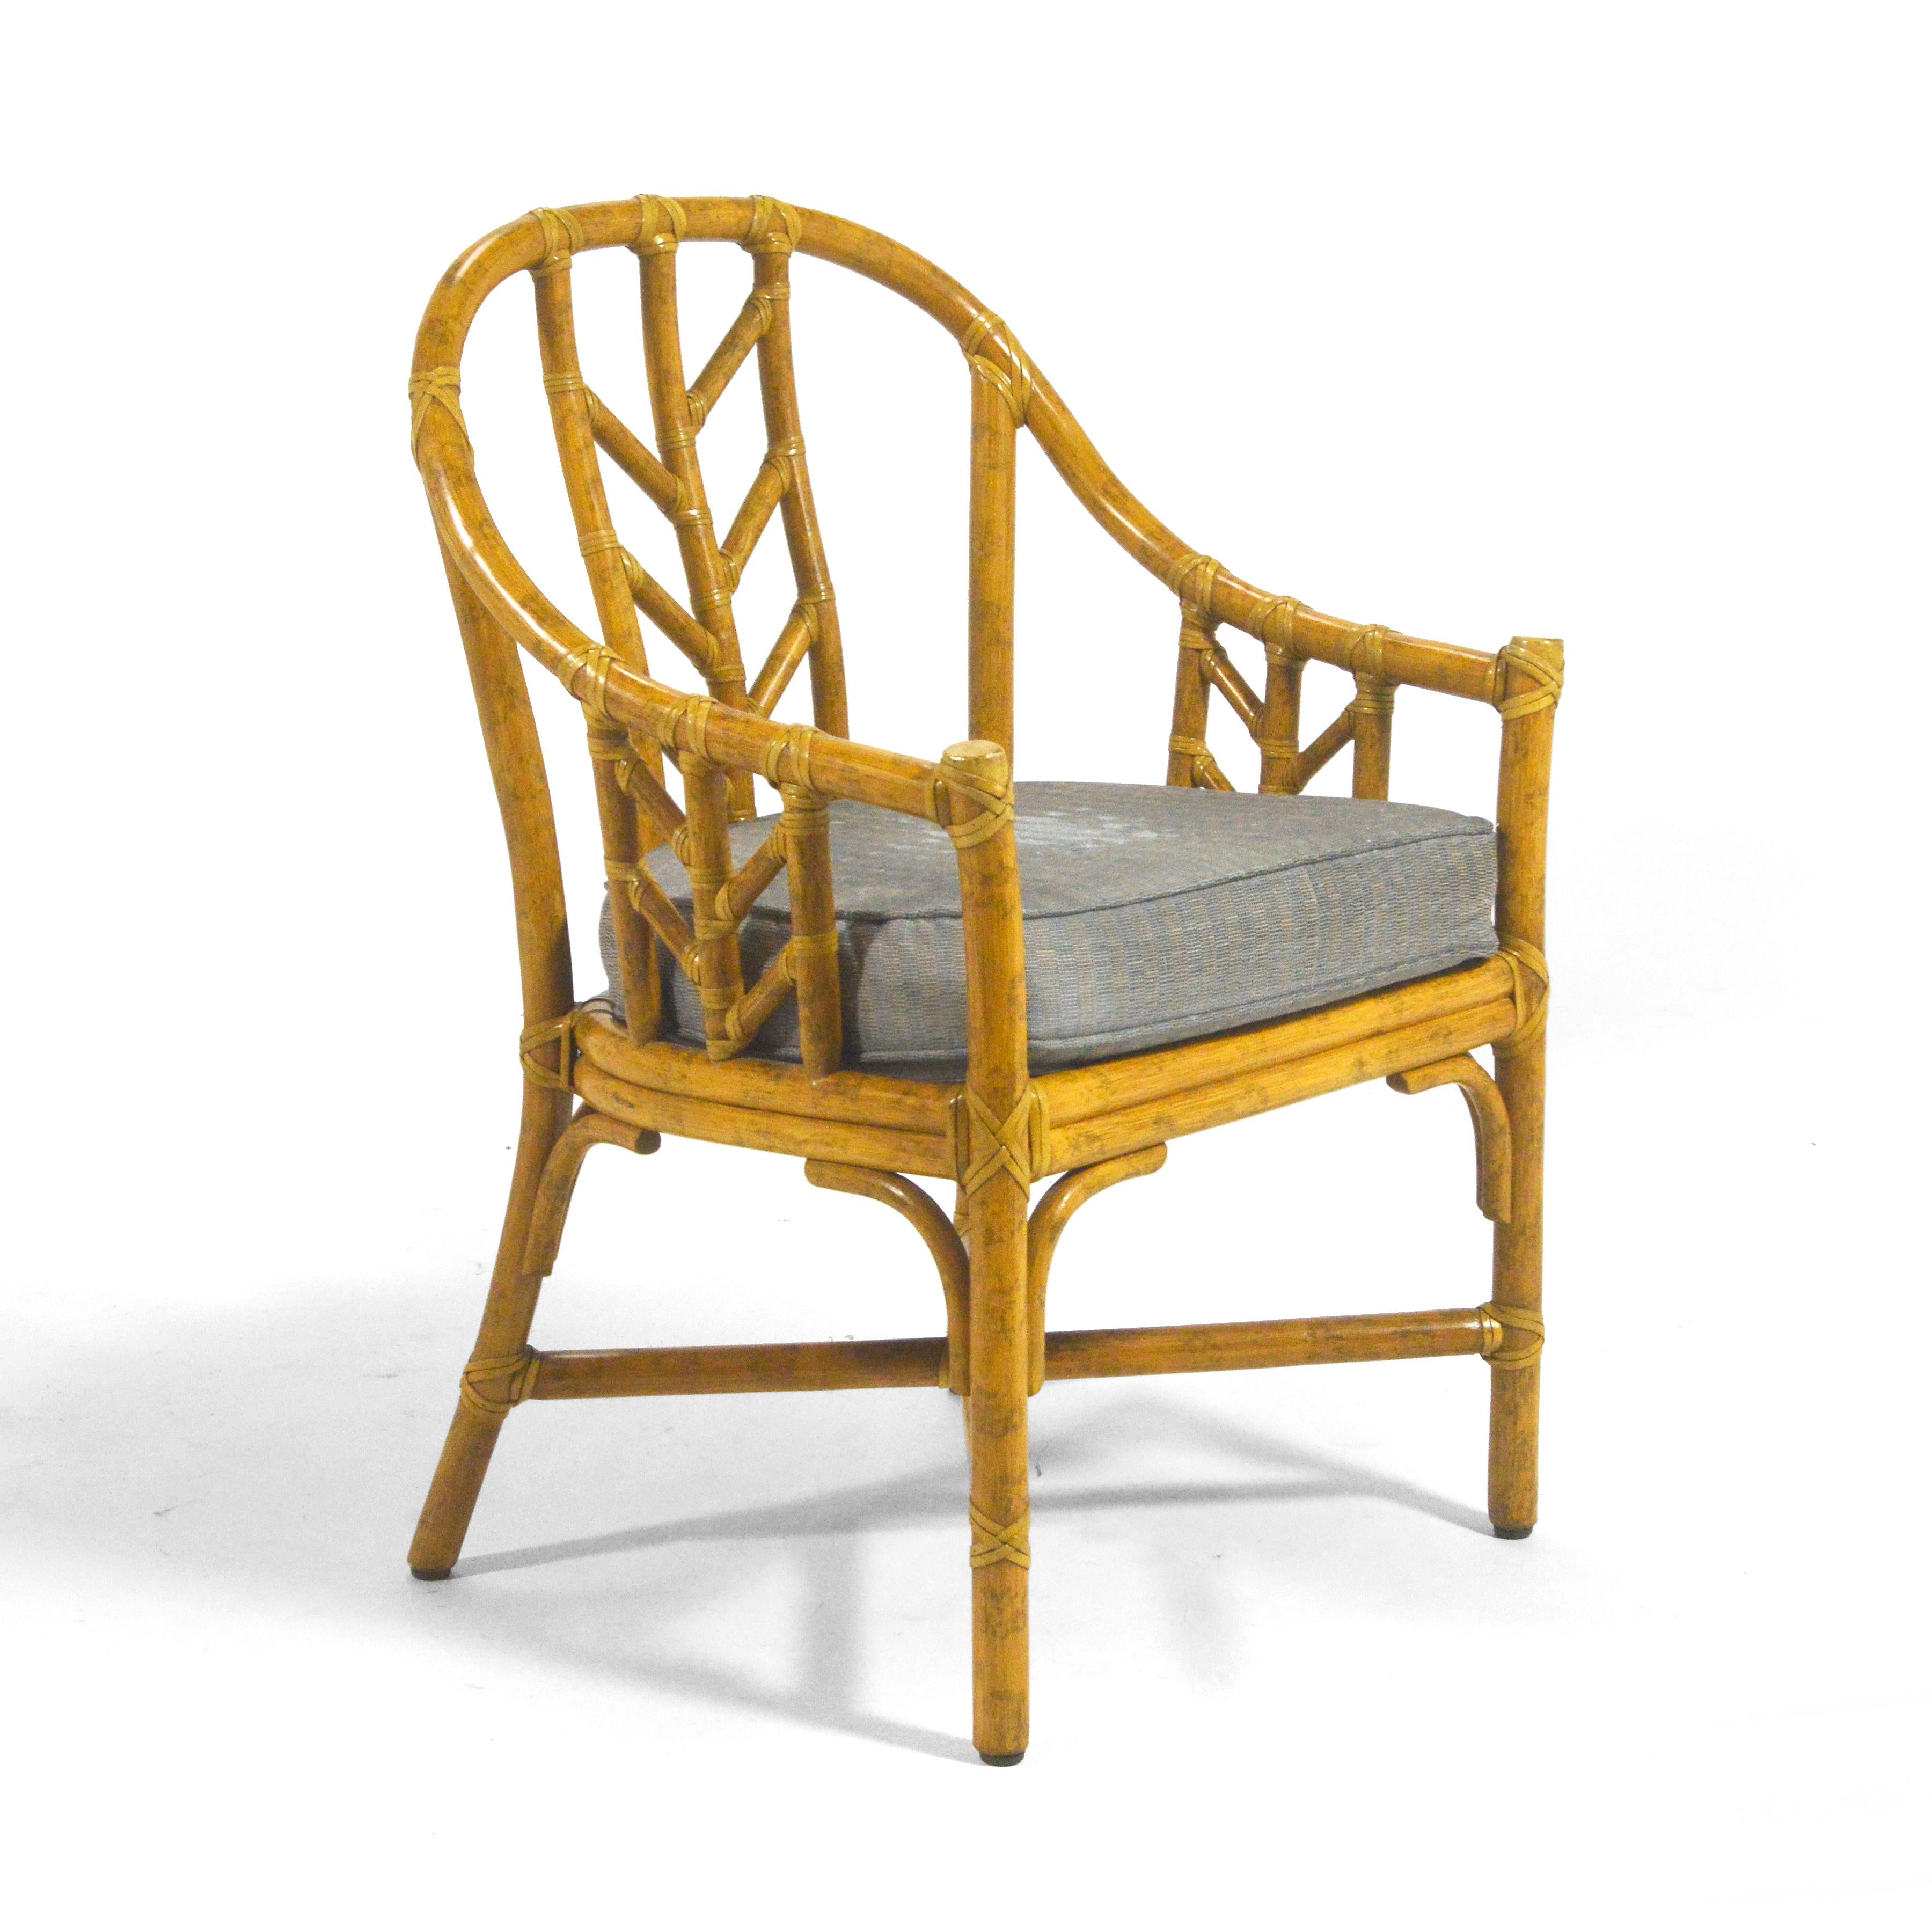 Elinor McGuire entwarf diesen Beistellstuhl des Modells M-71 für McGuire of San Fransisco, das Unternehmen, das sie zusammen mit ihrem Mann John gründete. McGuire-Möbel sind für die Lebensdauer von Generationen gemacht. Das moderne kalifornische